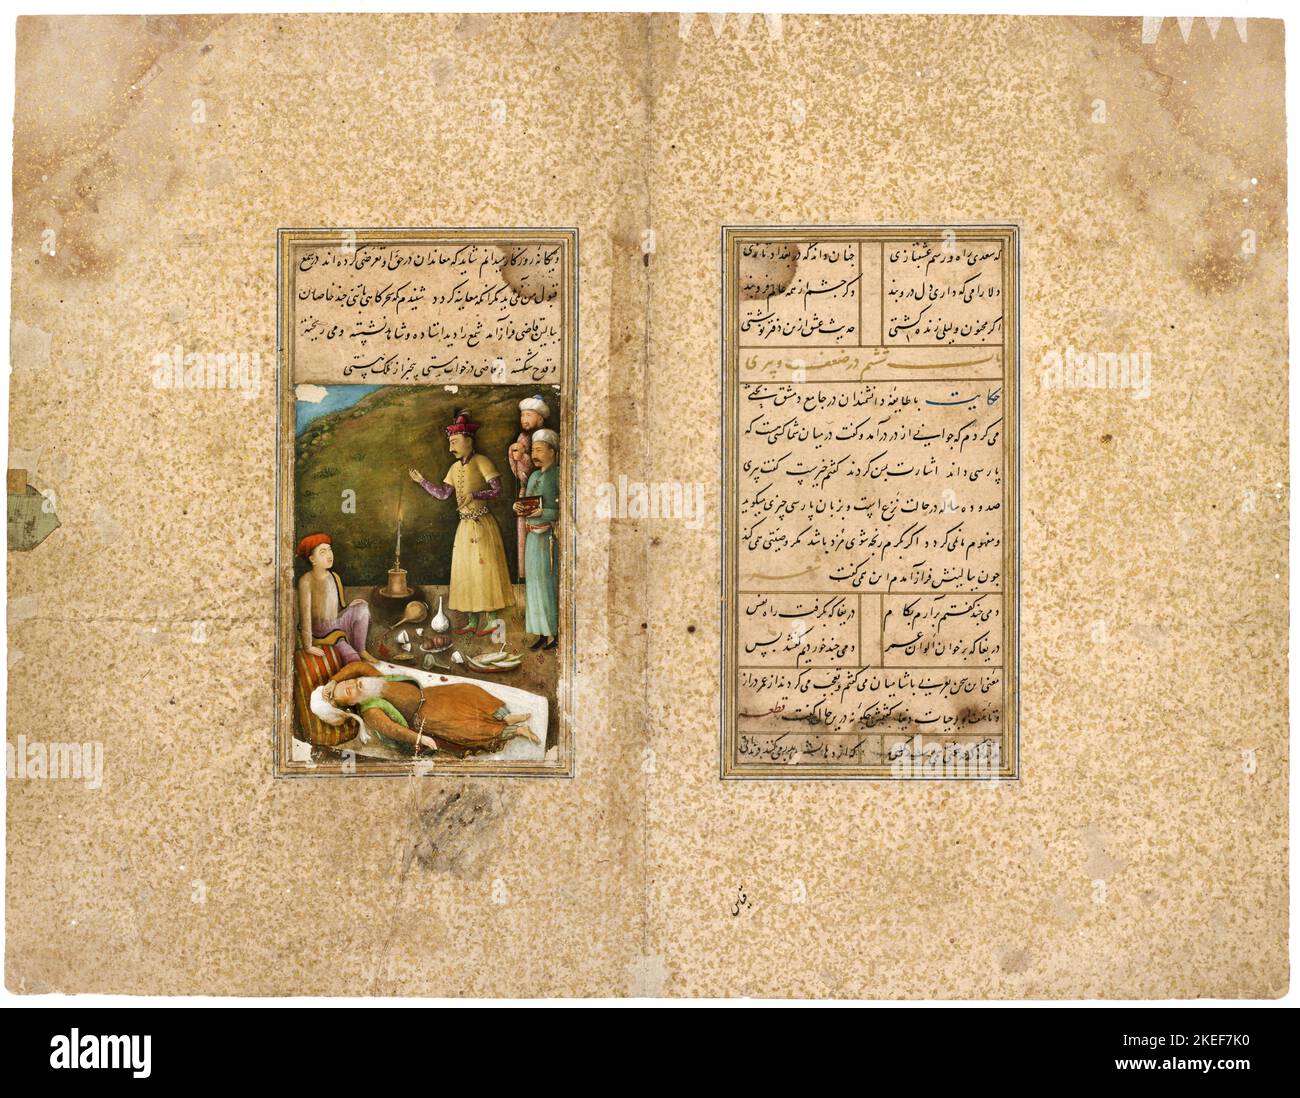 AQA Mirak, un manuscrito del Gulistán; Sa’di en un jardín de rosas; el Qazi de Hamadán en un estado borracho; Circa 1468-1645, galería libre del arte, Washin Foto de stock